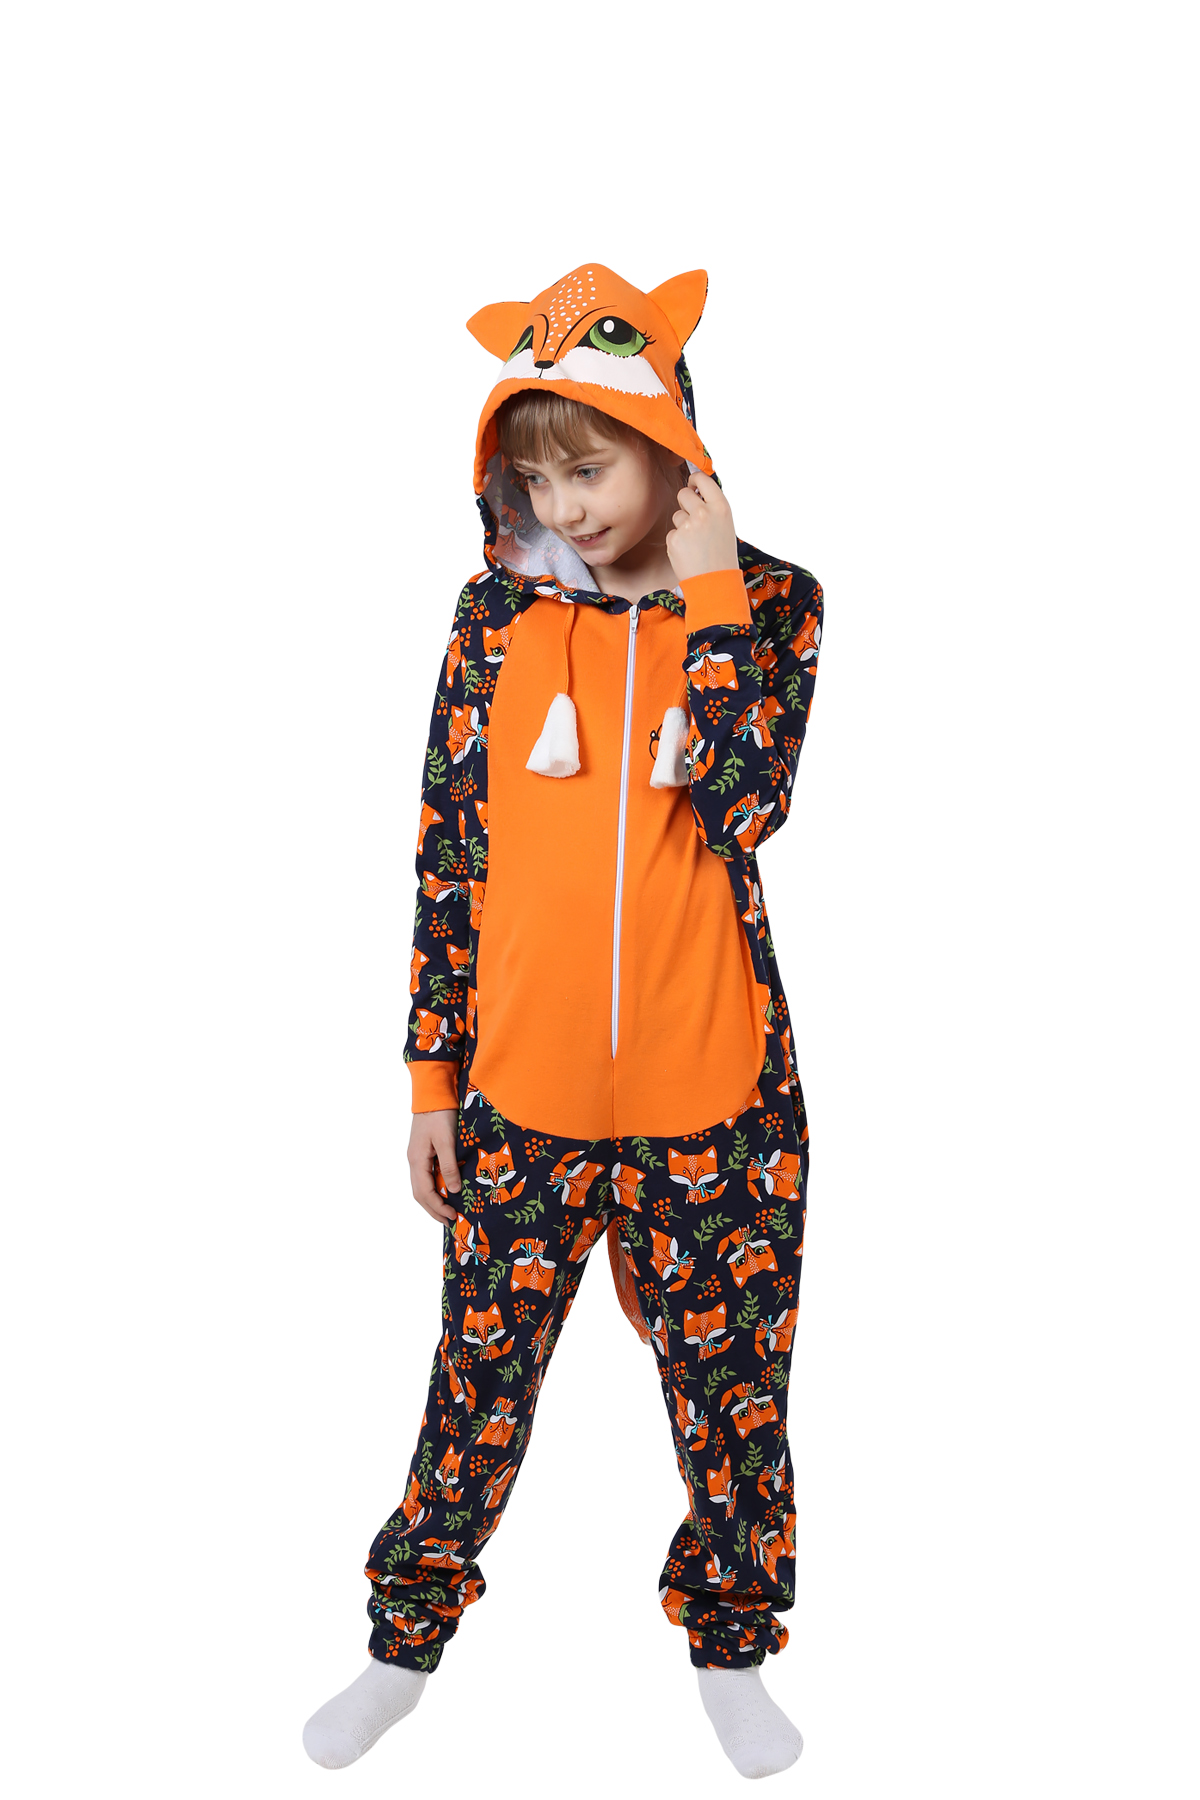 Детская пижама-кигуруми Лиса Цвет: Оранжевый (12 лет), размер 12 лет otj636471 Детская пижама-кигуруми Лиса Цвет: Оранжевый (12 лет) - фото 1